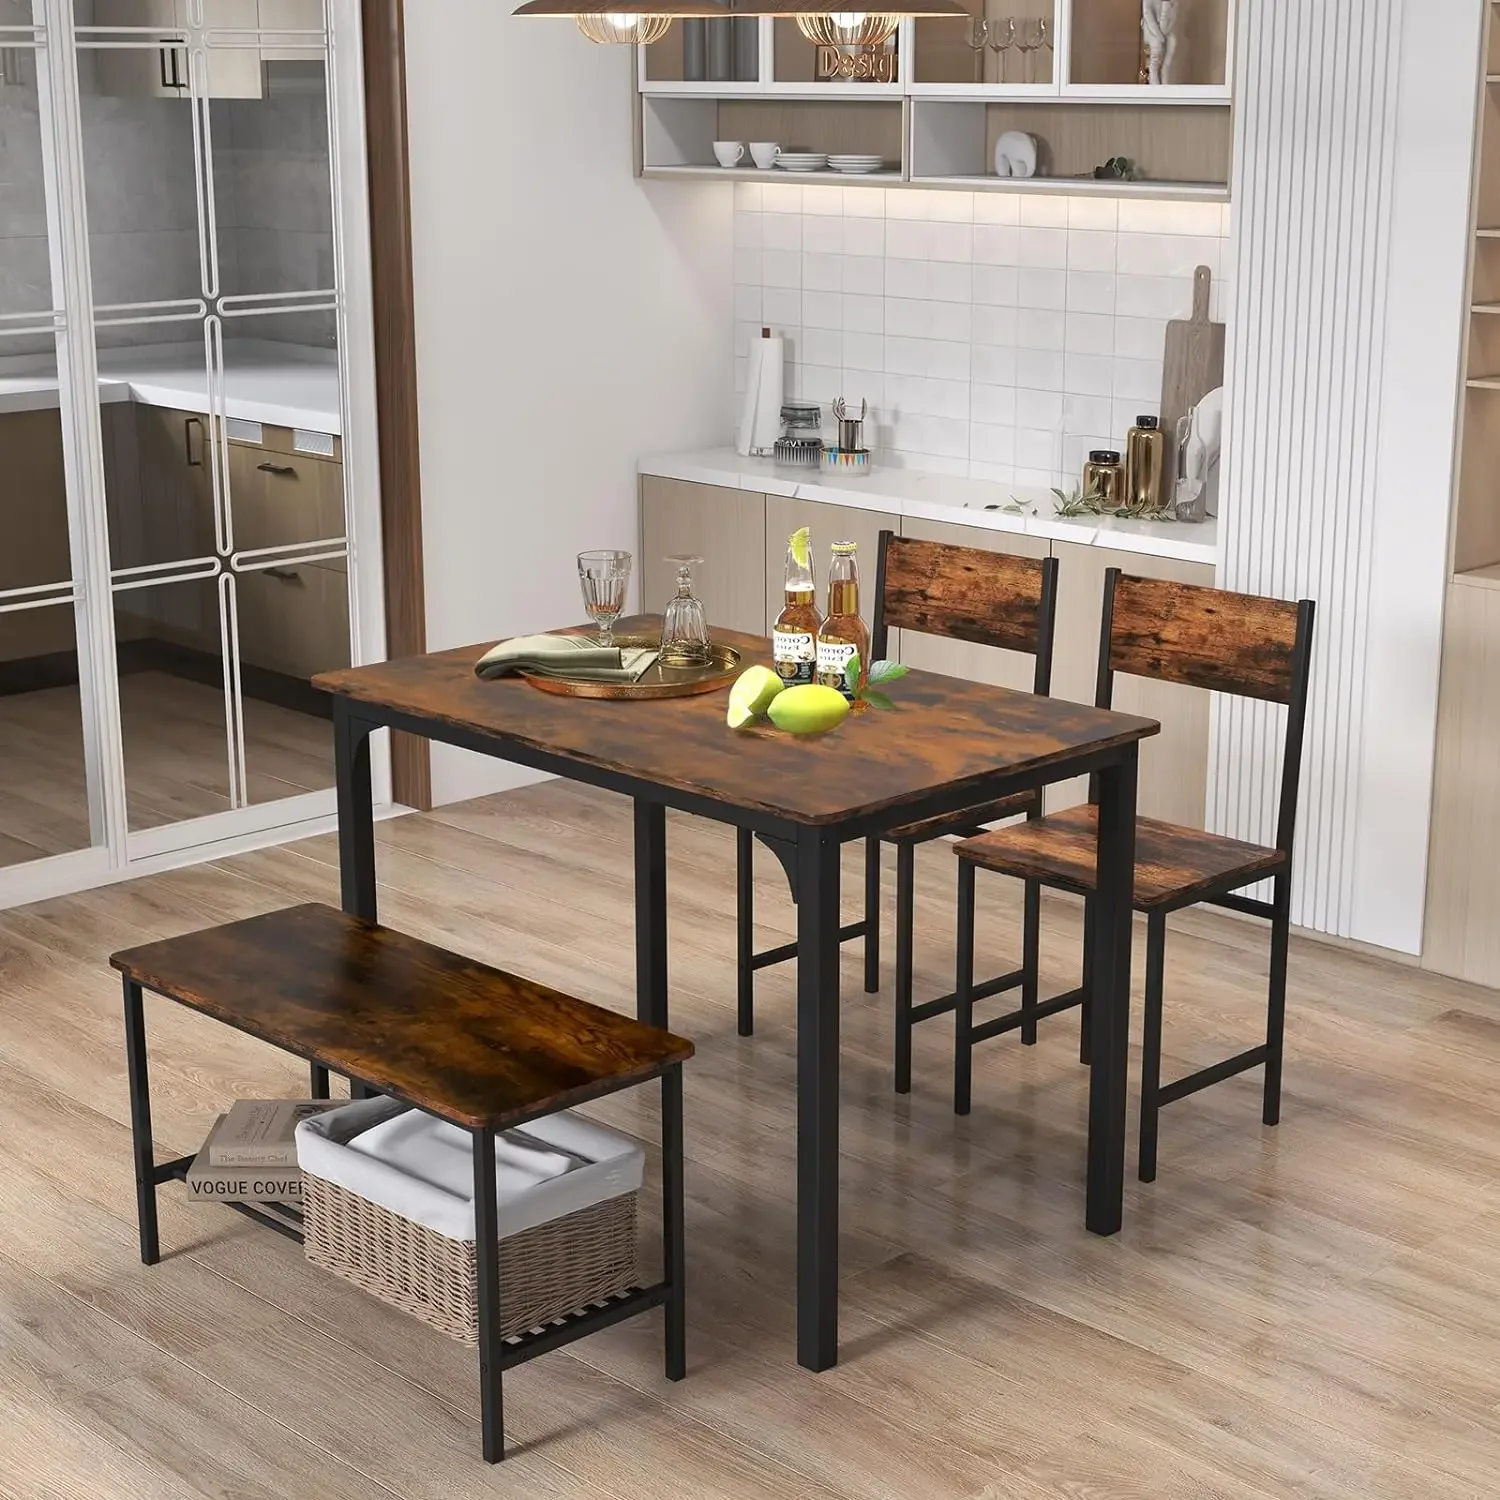 

Кухонный стол со скамейкой и стульями, промышленный обеденный стол с металлической рамой и полкой для хранения, набор столовых приборов,